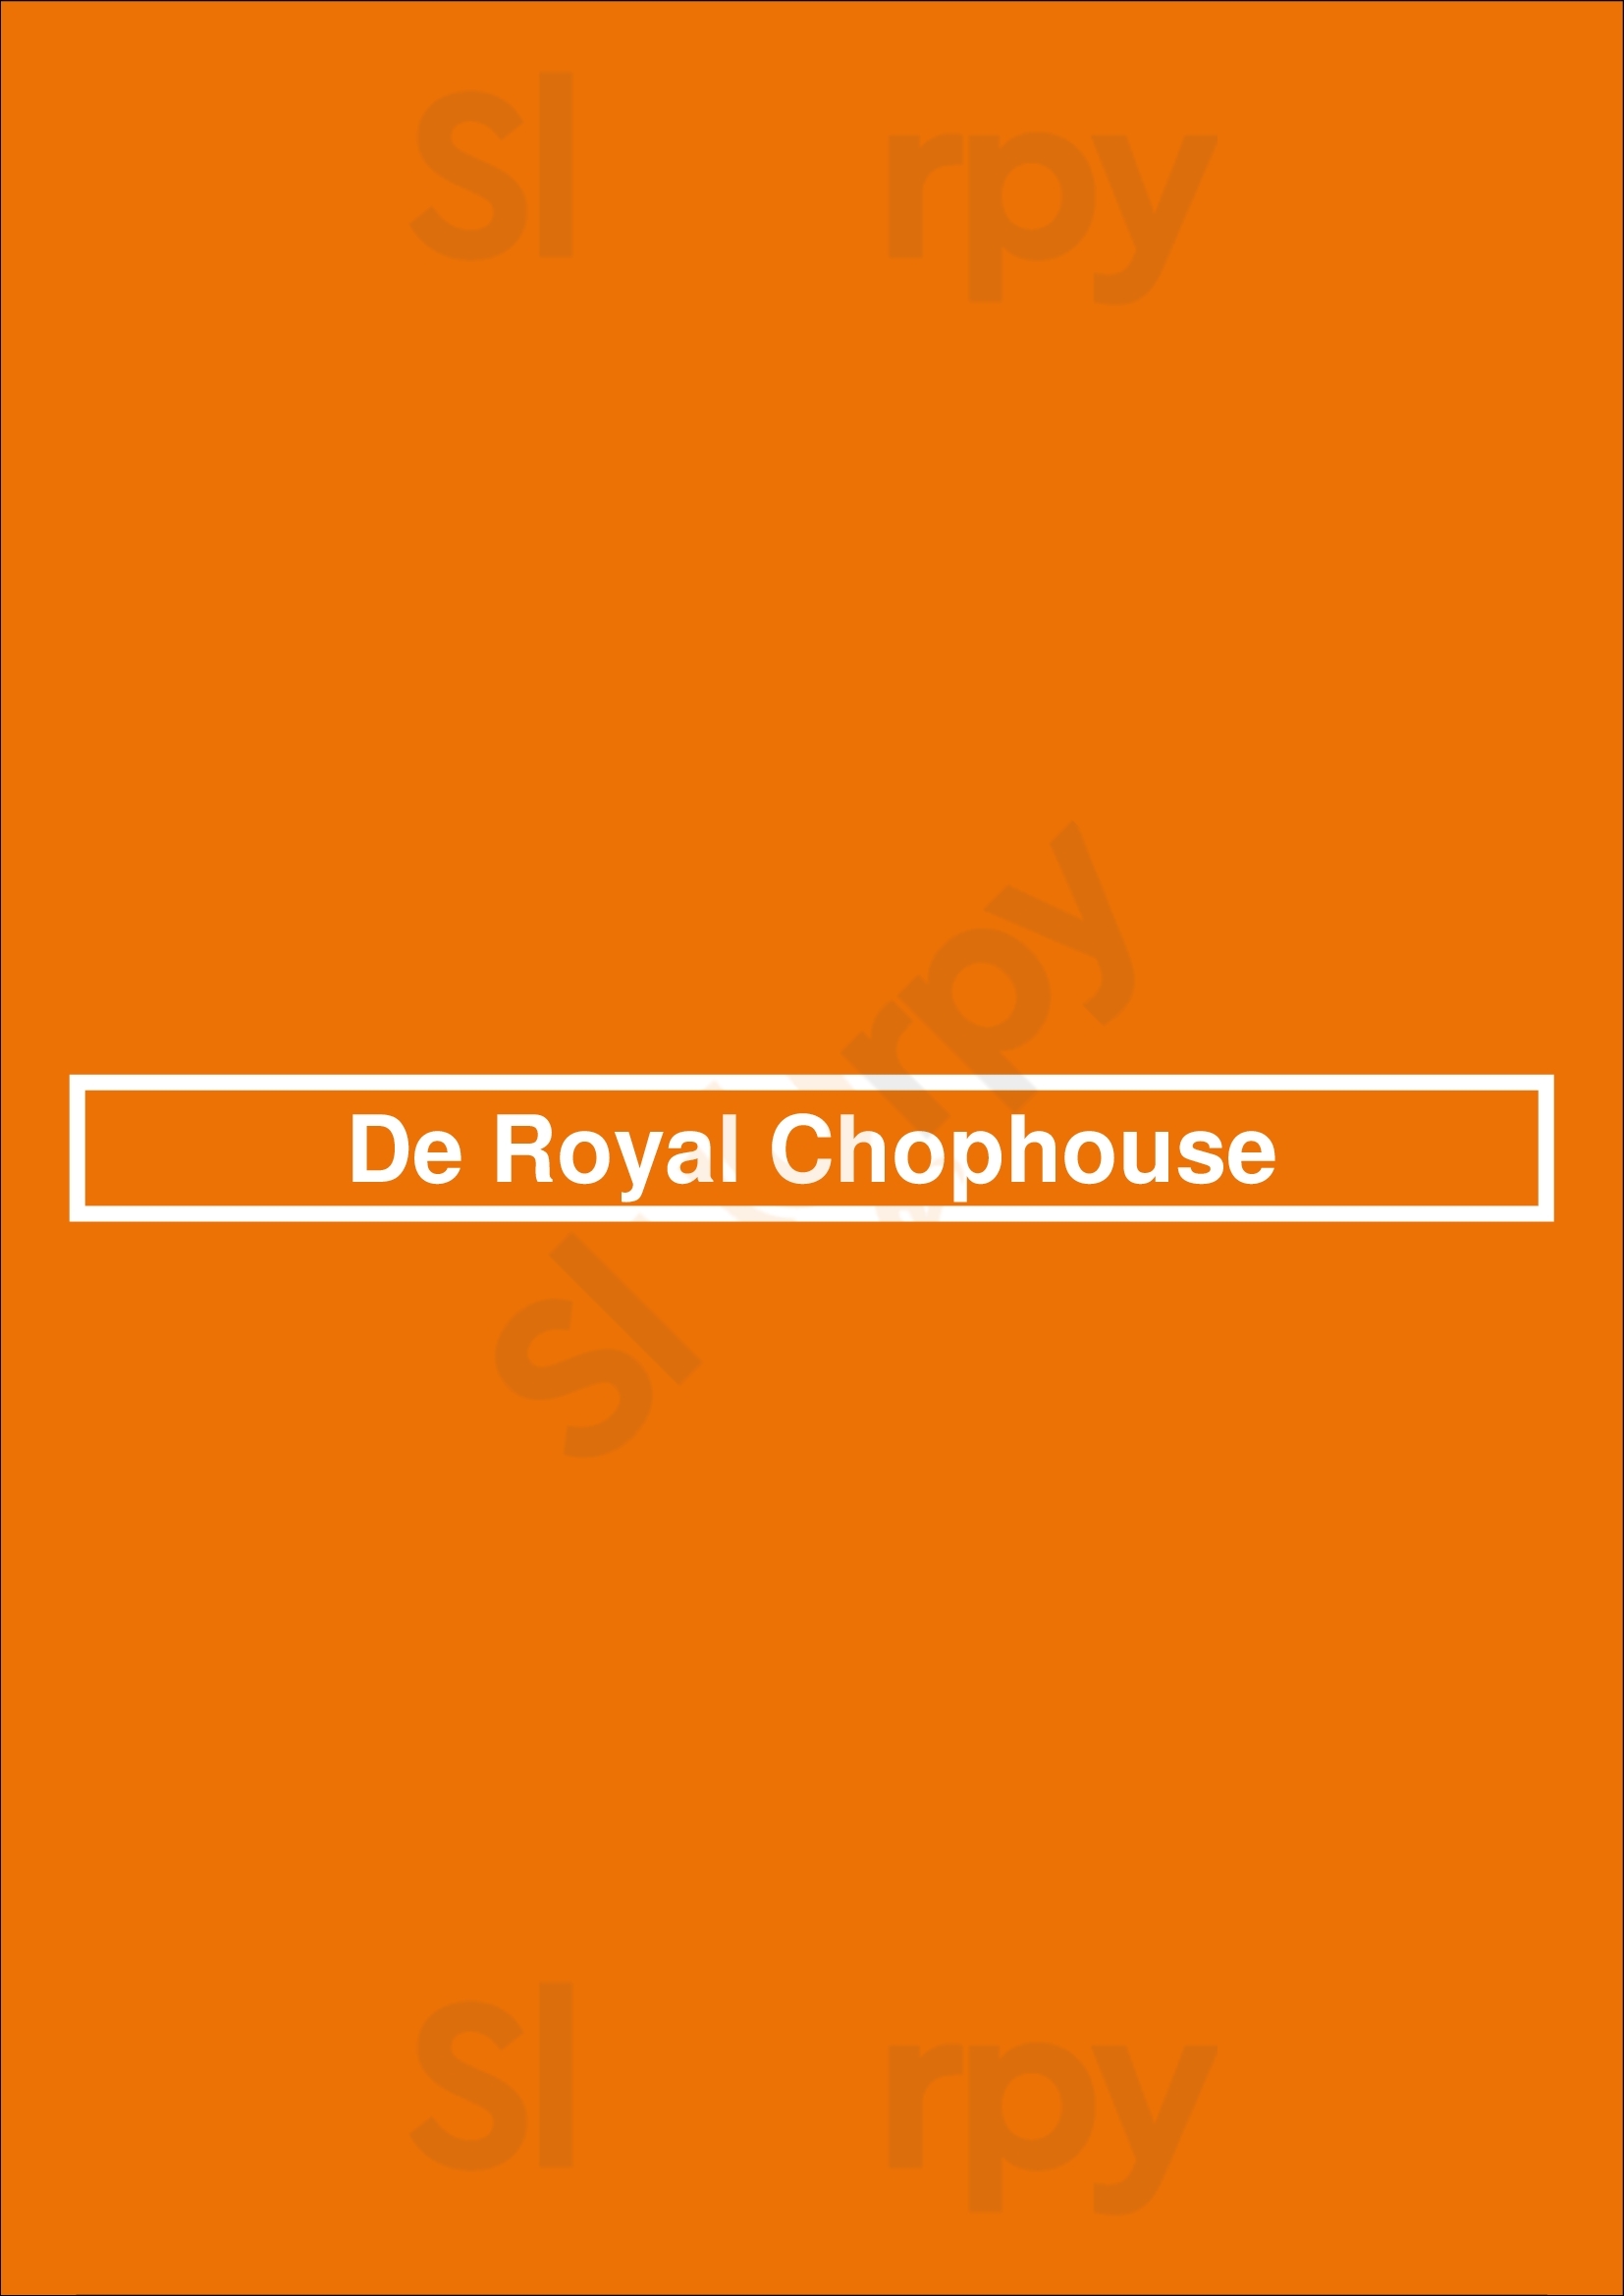 De Royal Chophouse Amsterdam Menu - 1